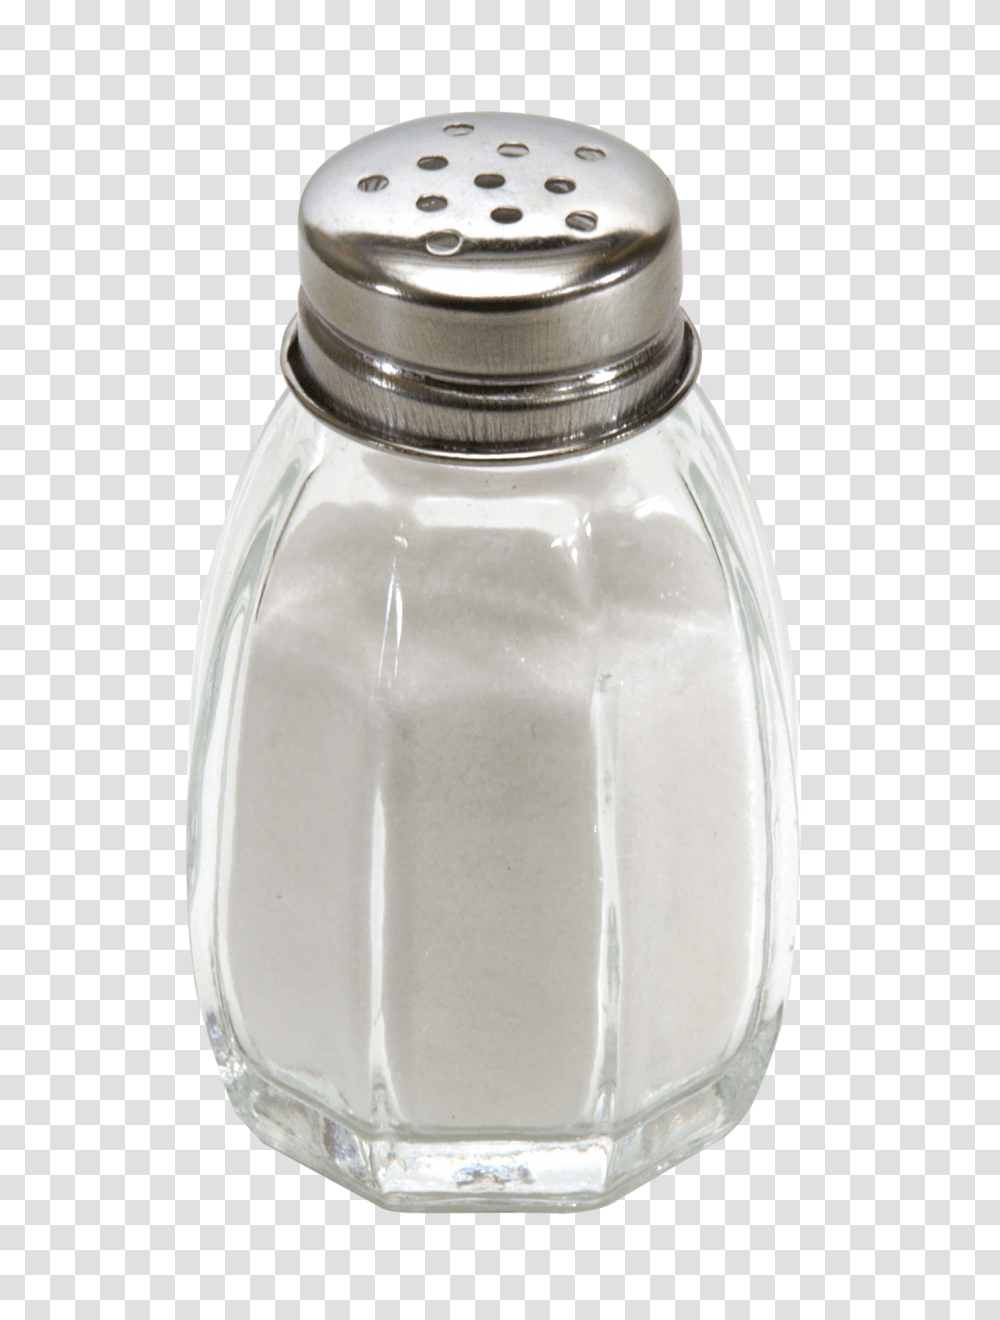 Salt Shaker Image, Food, Milk, Beverage, Drink Transparent Png